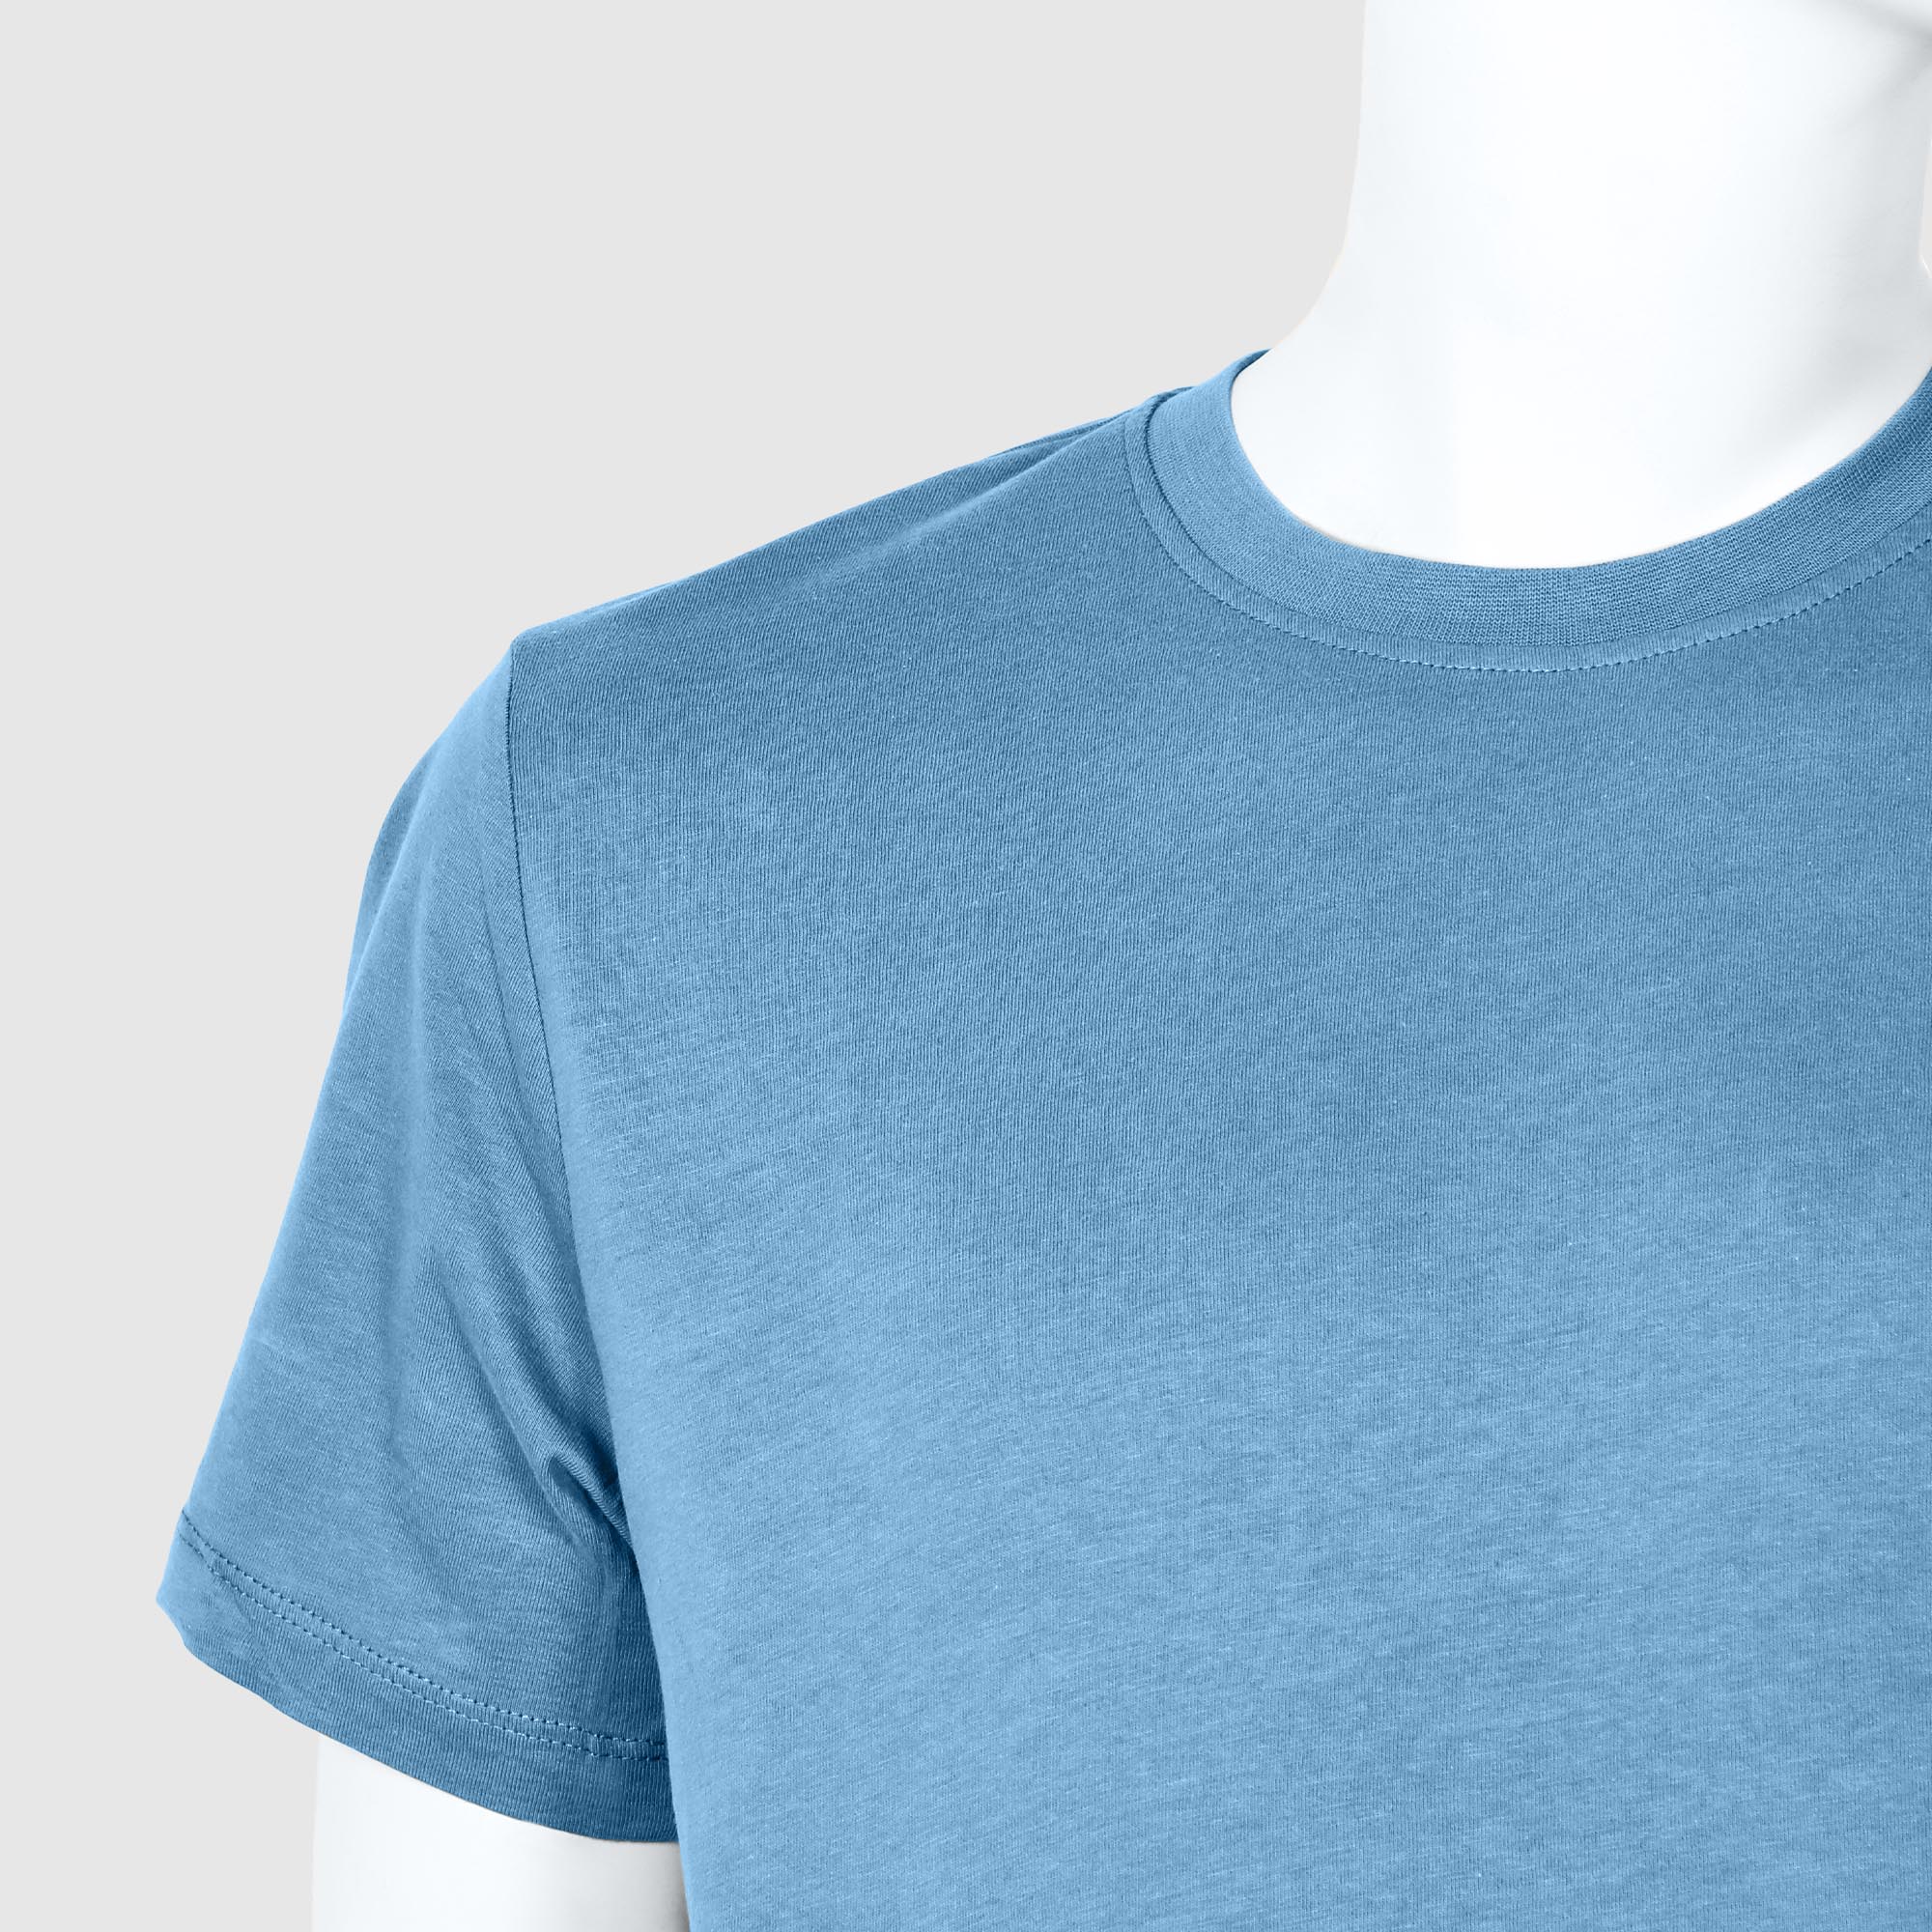 Мужская футболка Diva Teks голубая (DTD-03), цвет голубой, размер 52-54 - фото 3